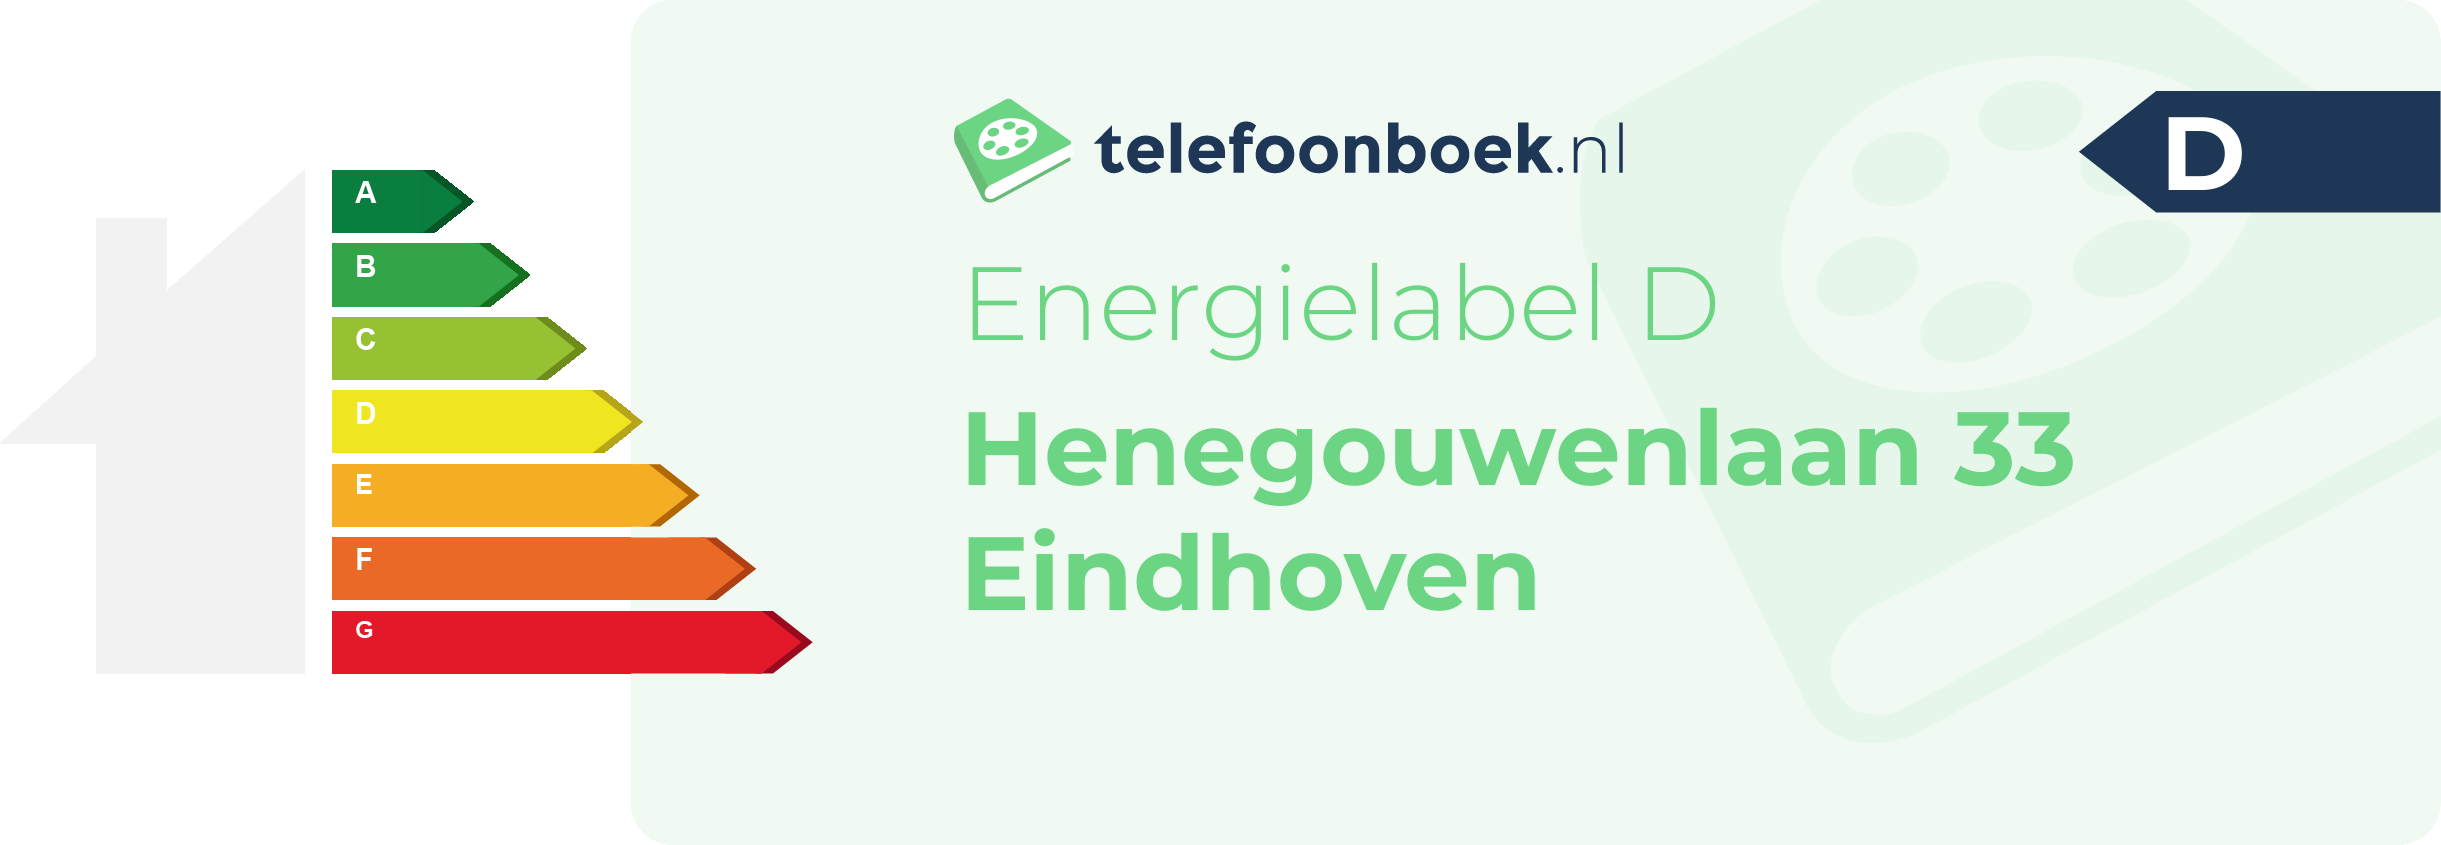 Energielabel Henegouwenlaan 33 Eindhoven